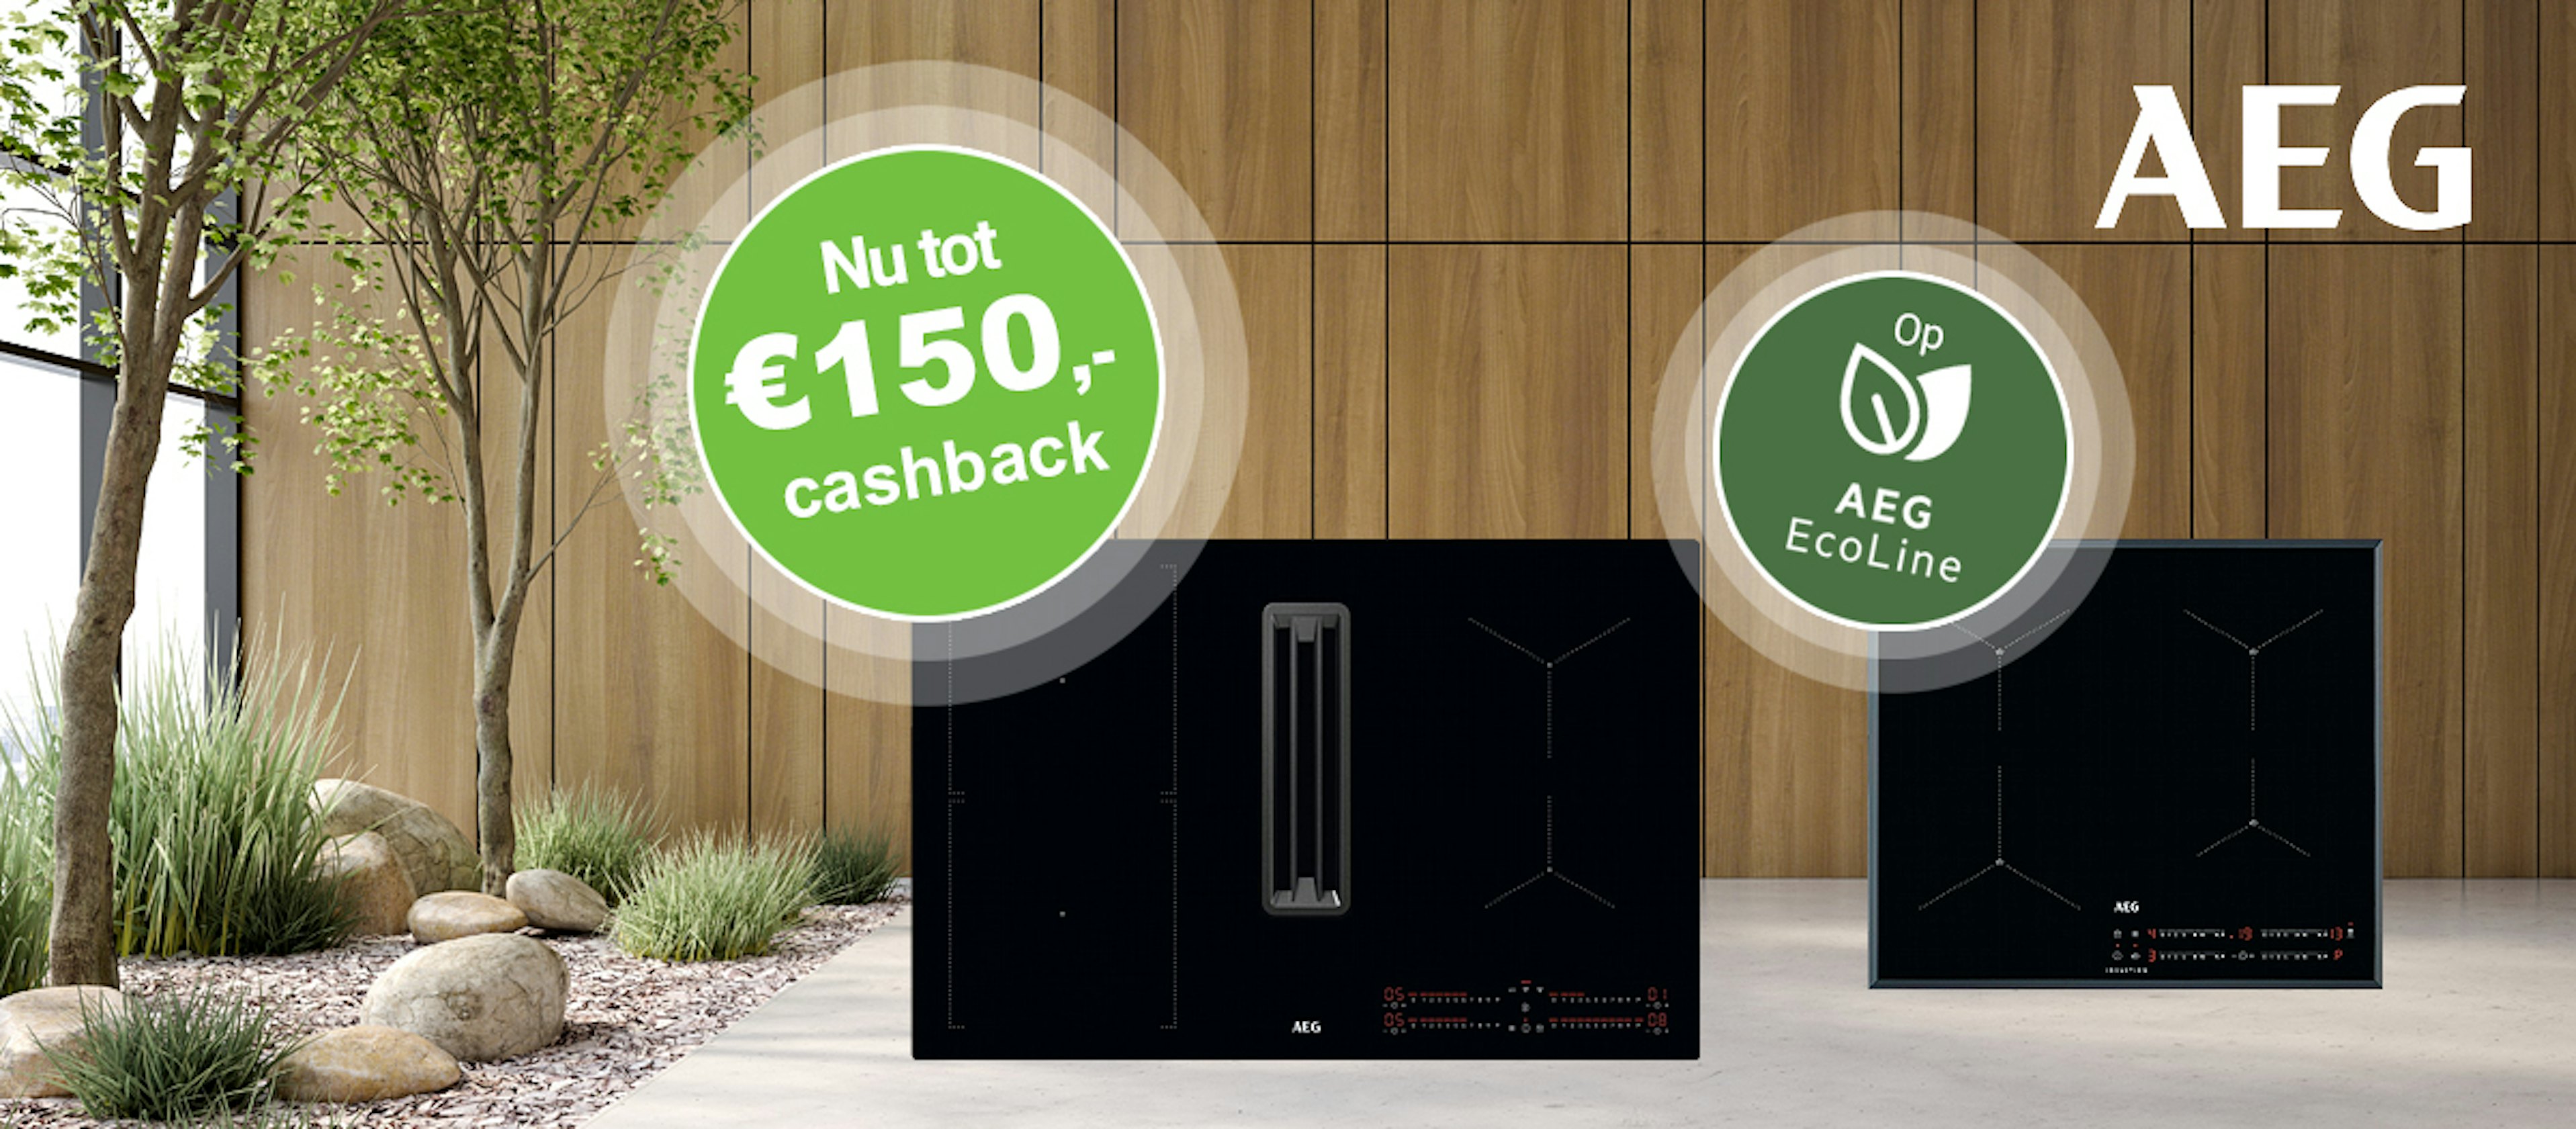 Ontvang nu tot €150,- retour bij aankoop van een AEG EcoLine kookplaat.